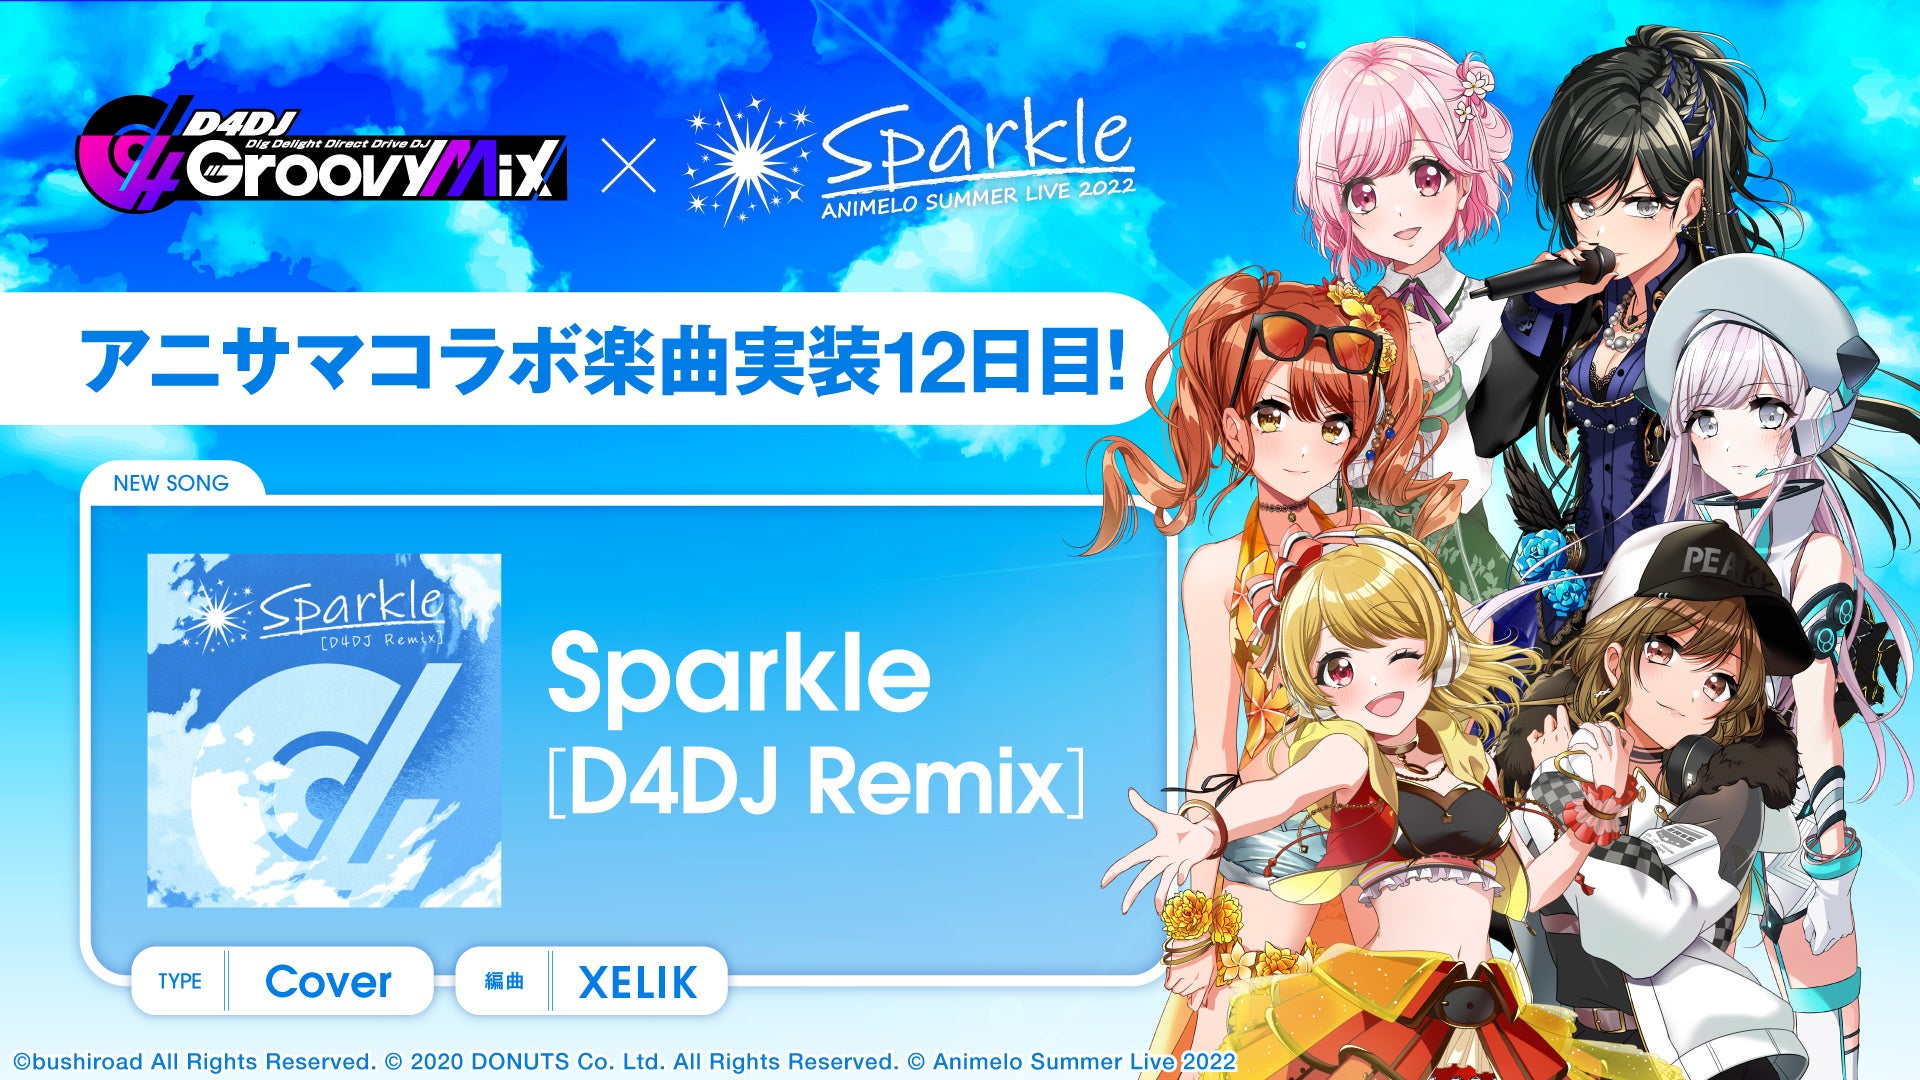 スマートフォン向けリズムゲーム「D4DJ Groovy Mix」にアニサマコラボ楽曲「Sparkle [D4DJ Remix]」カバーを追加！